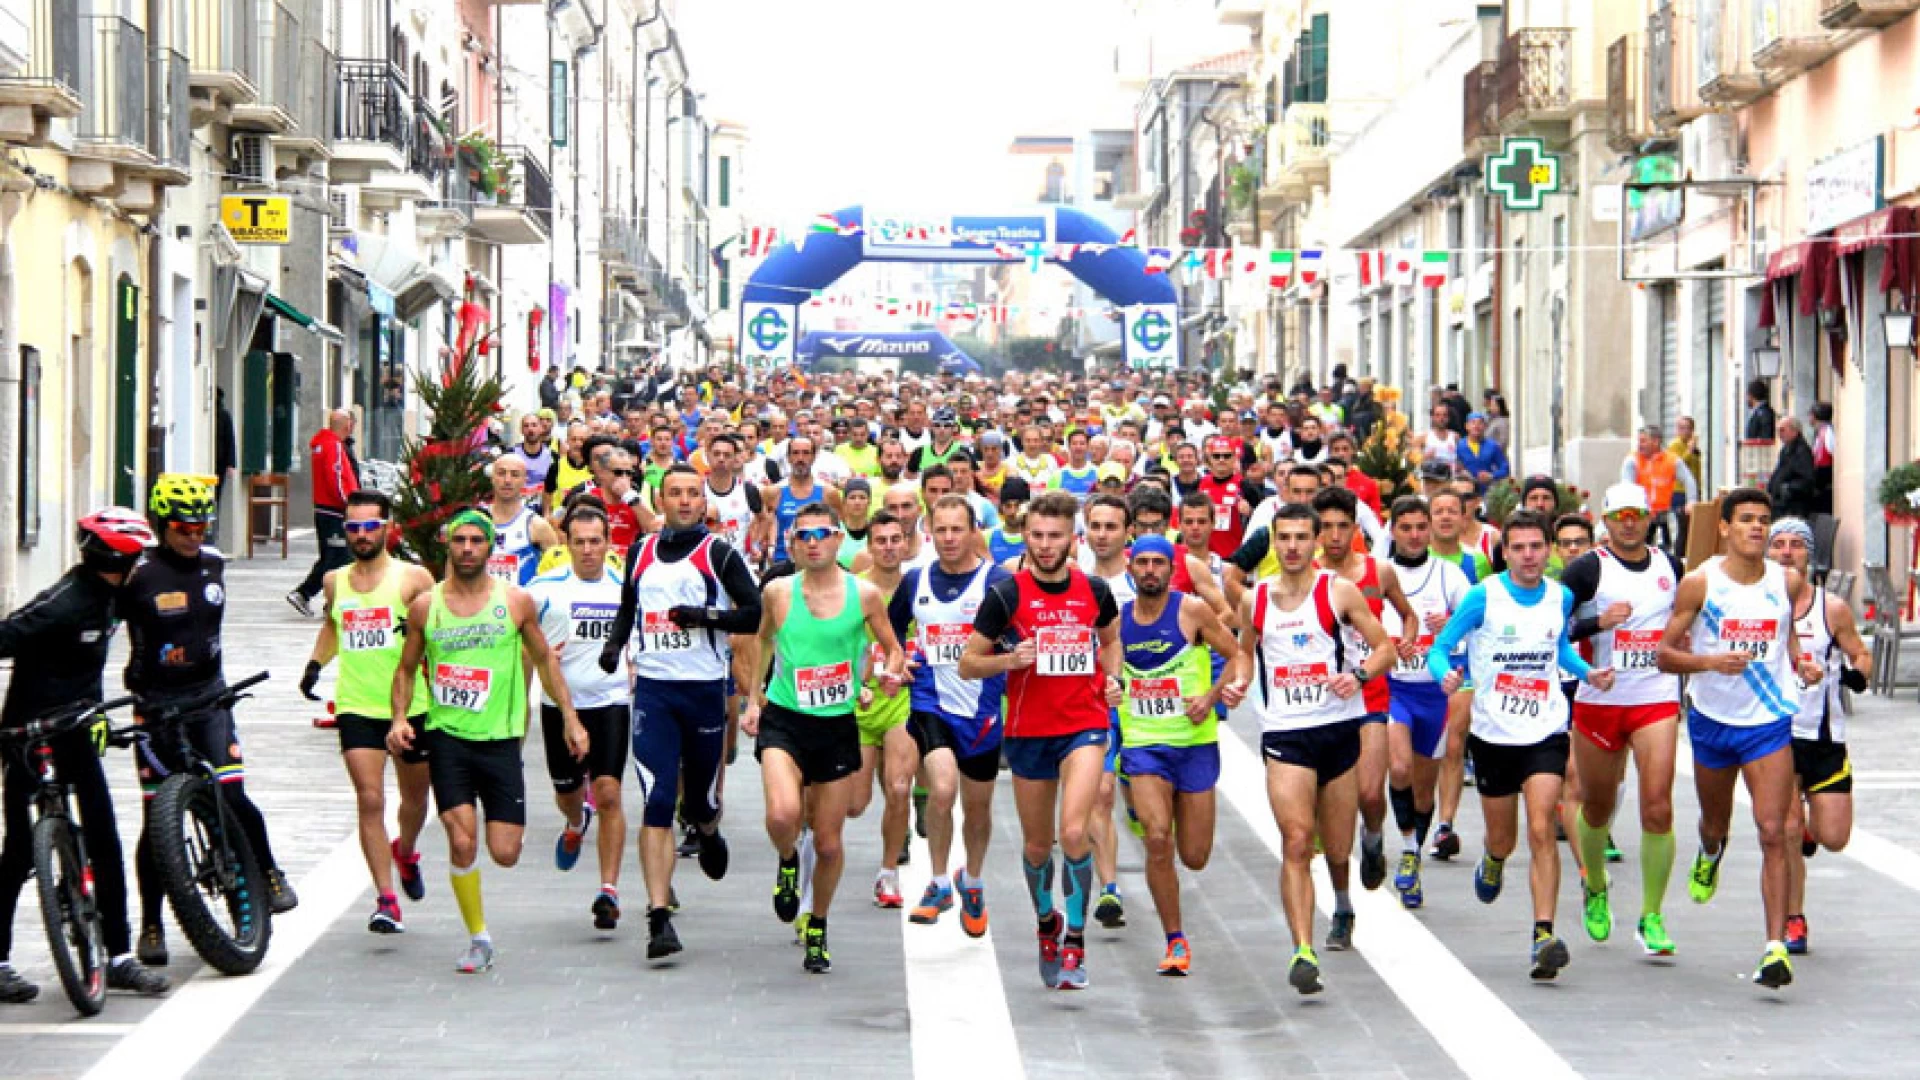 Francoforte : Giovanni Grano della Nai Isernia riscrive la storia della maratona molisana firmando il nuovo record personale.